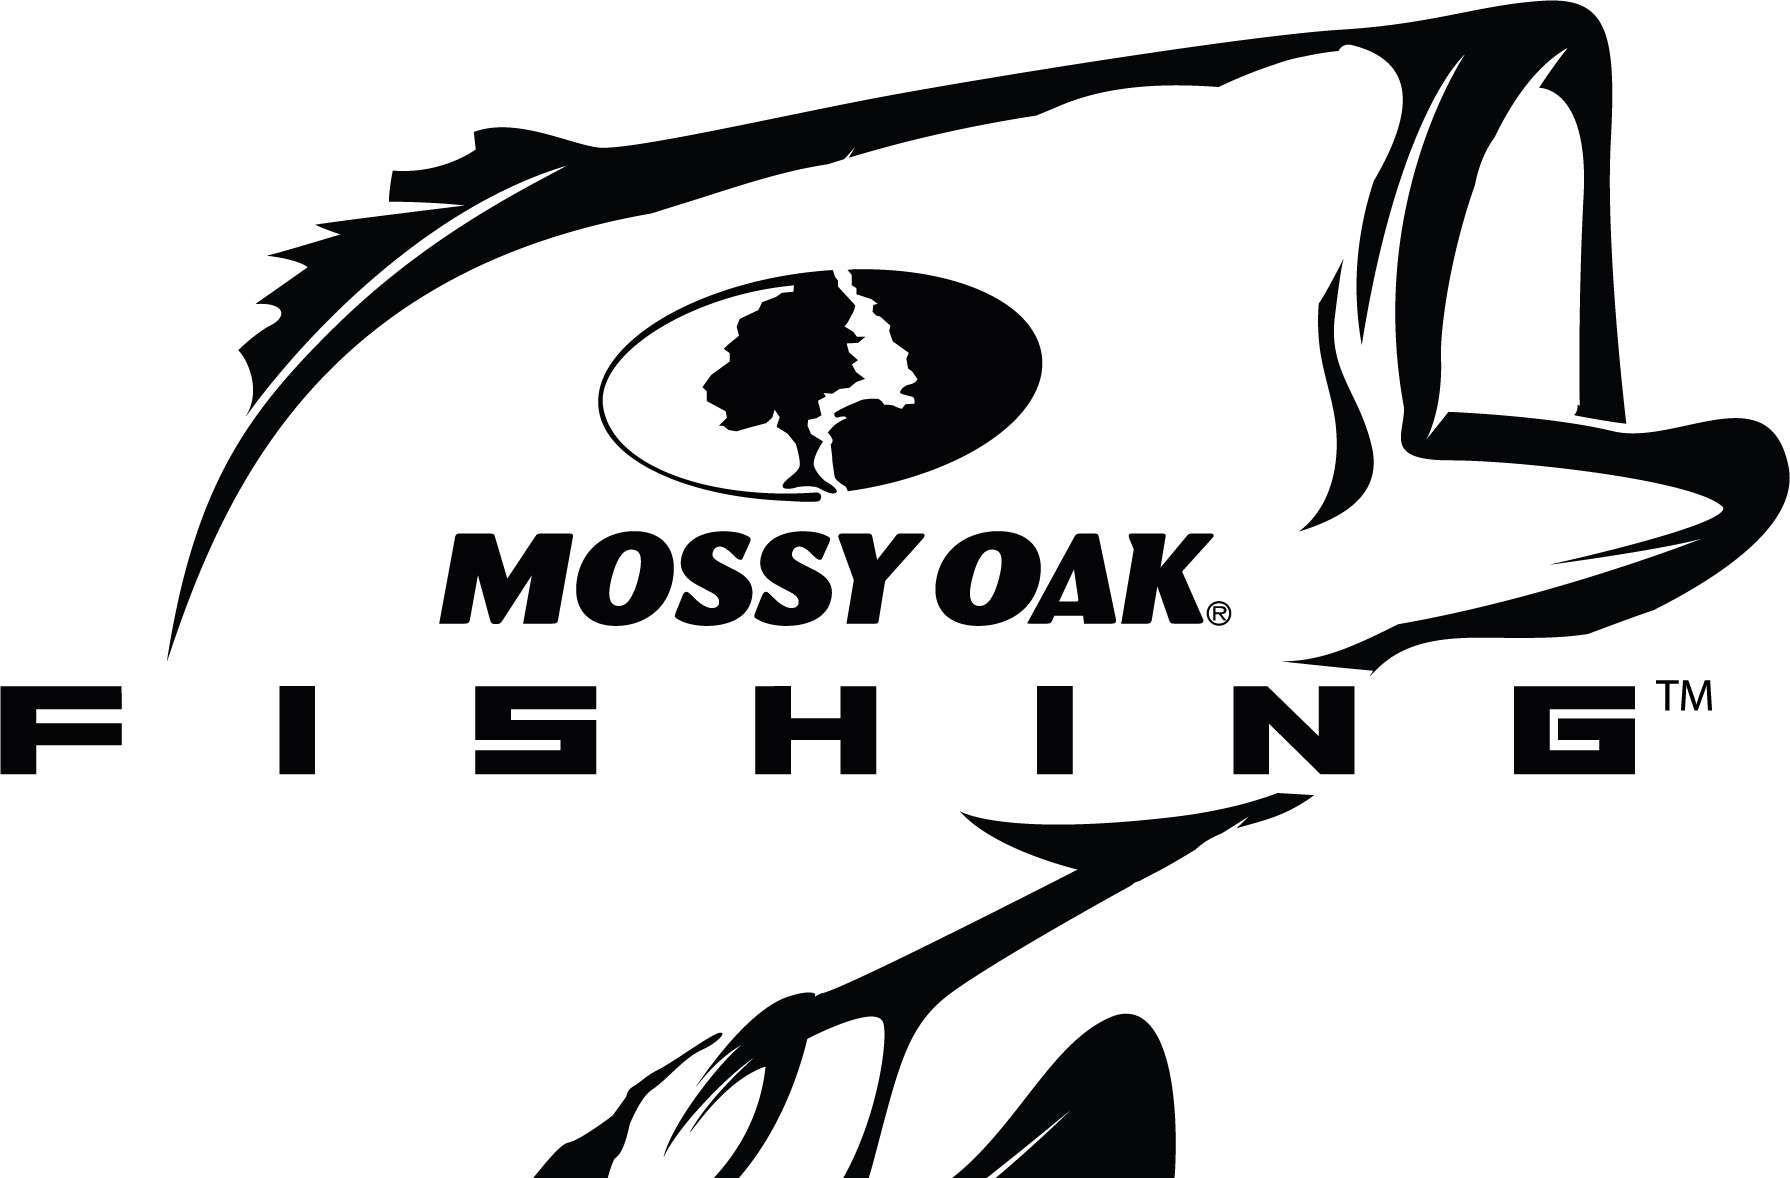 Mossy Oak Logo - Mossy Oak supporting sponsor of College Series